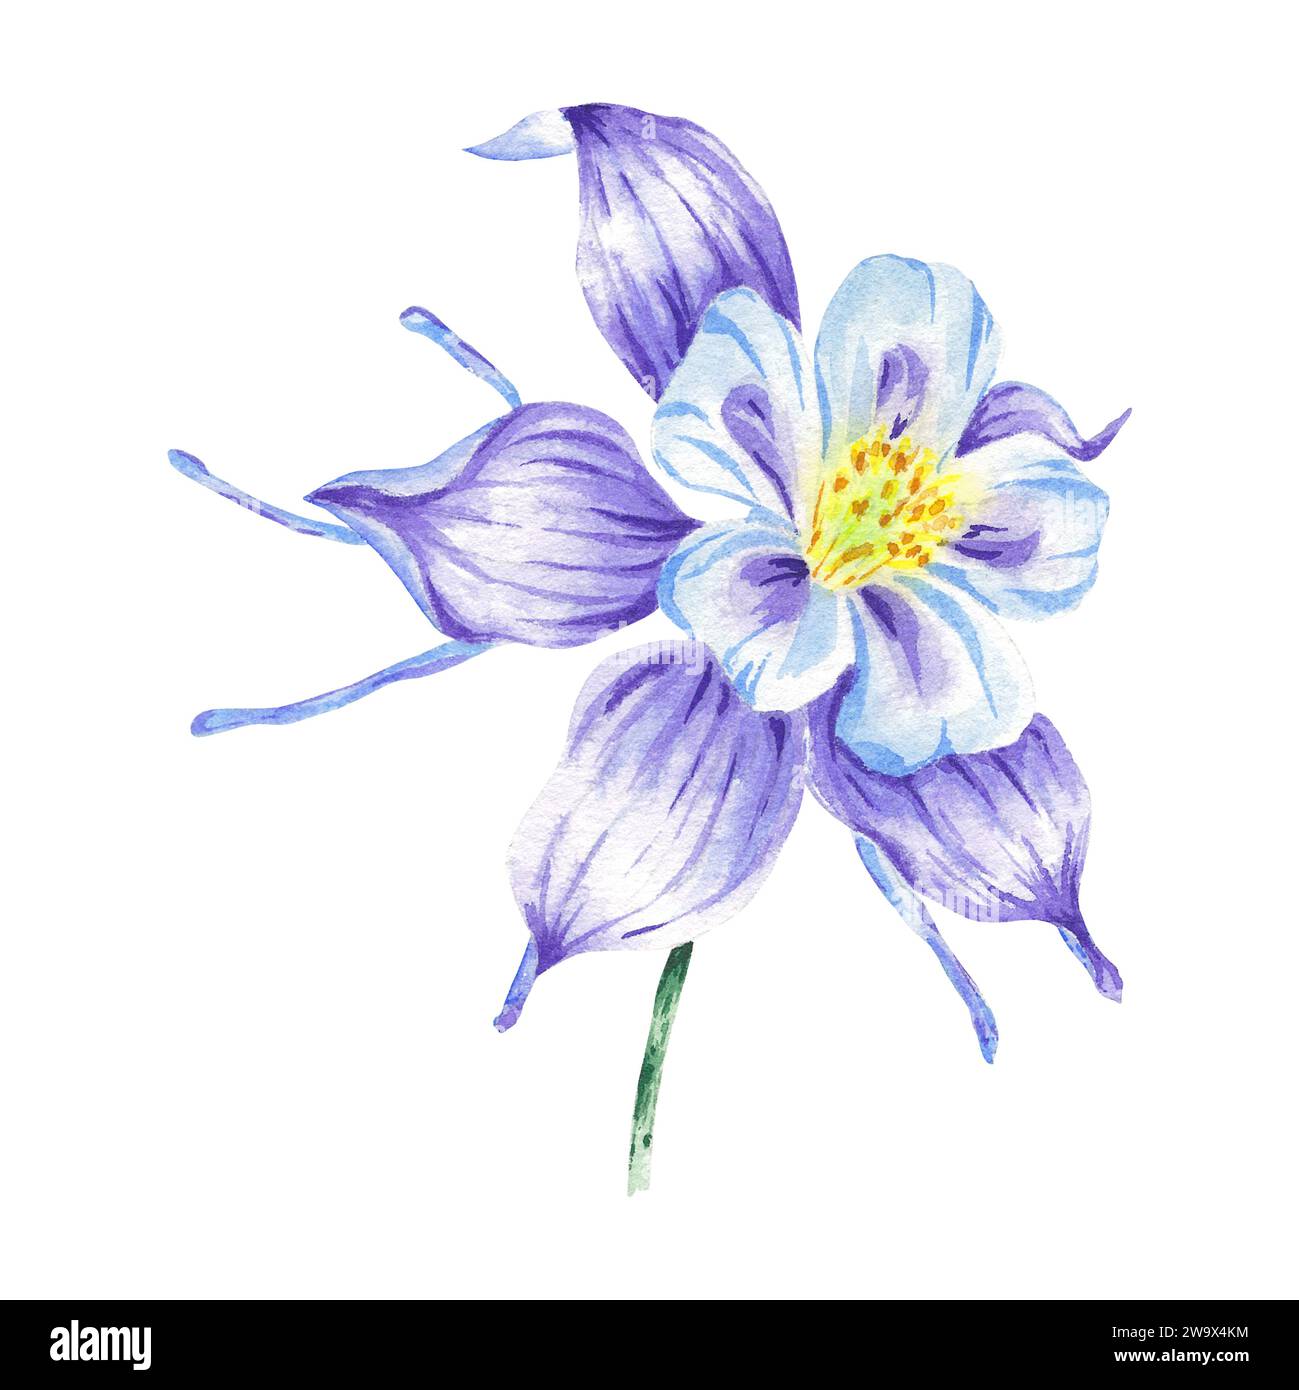 Fleur violette aquarelle isolée sur fond blanc dessiné à la main. Illustration violette dans le style botanique pour logo de conception, invitation de mariage, carte postale Banque D'Images